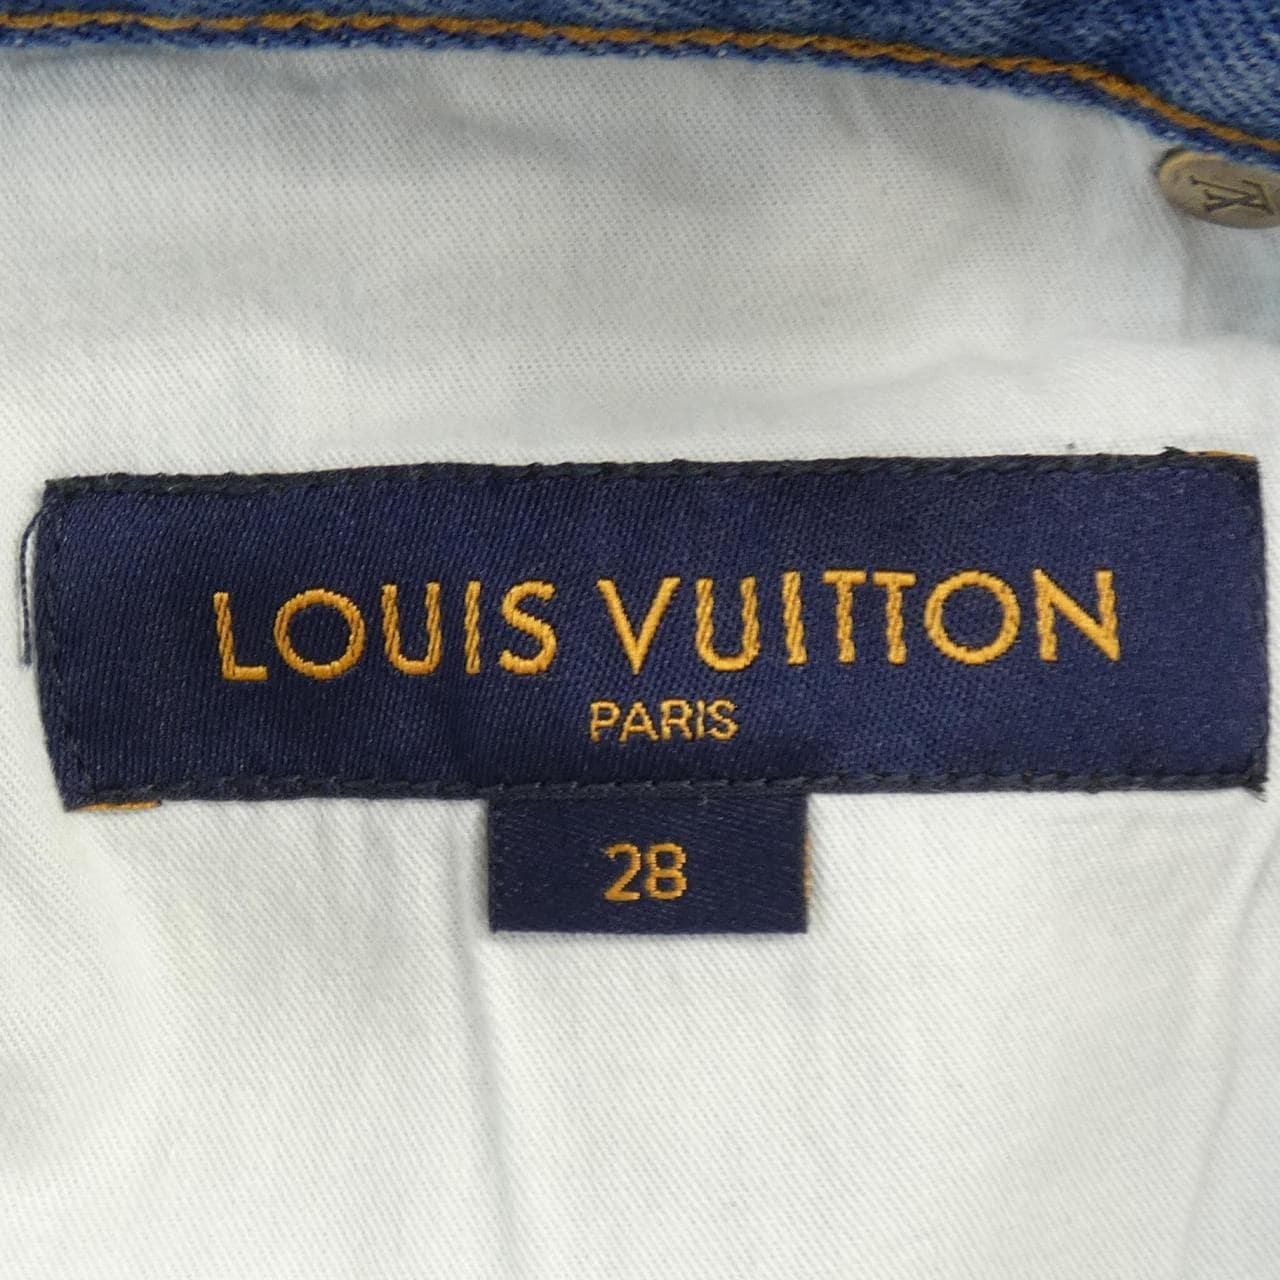 LOUIS LOUIS VUITTON jeans